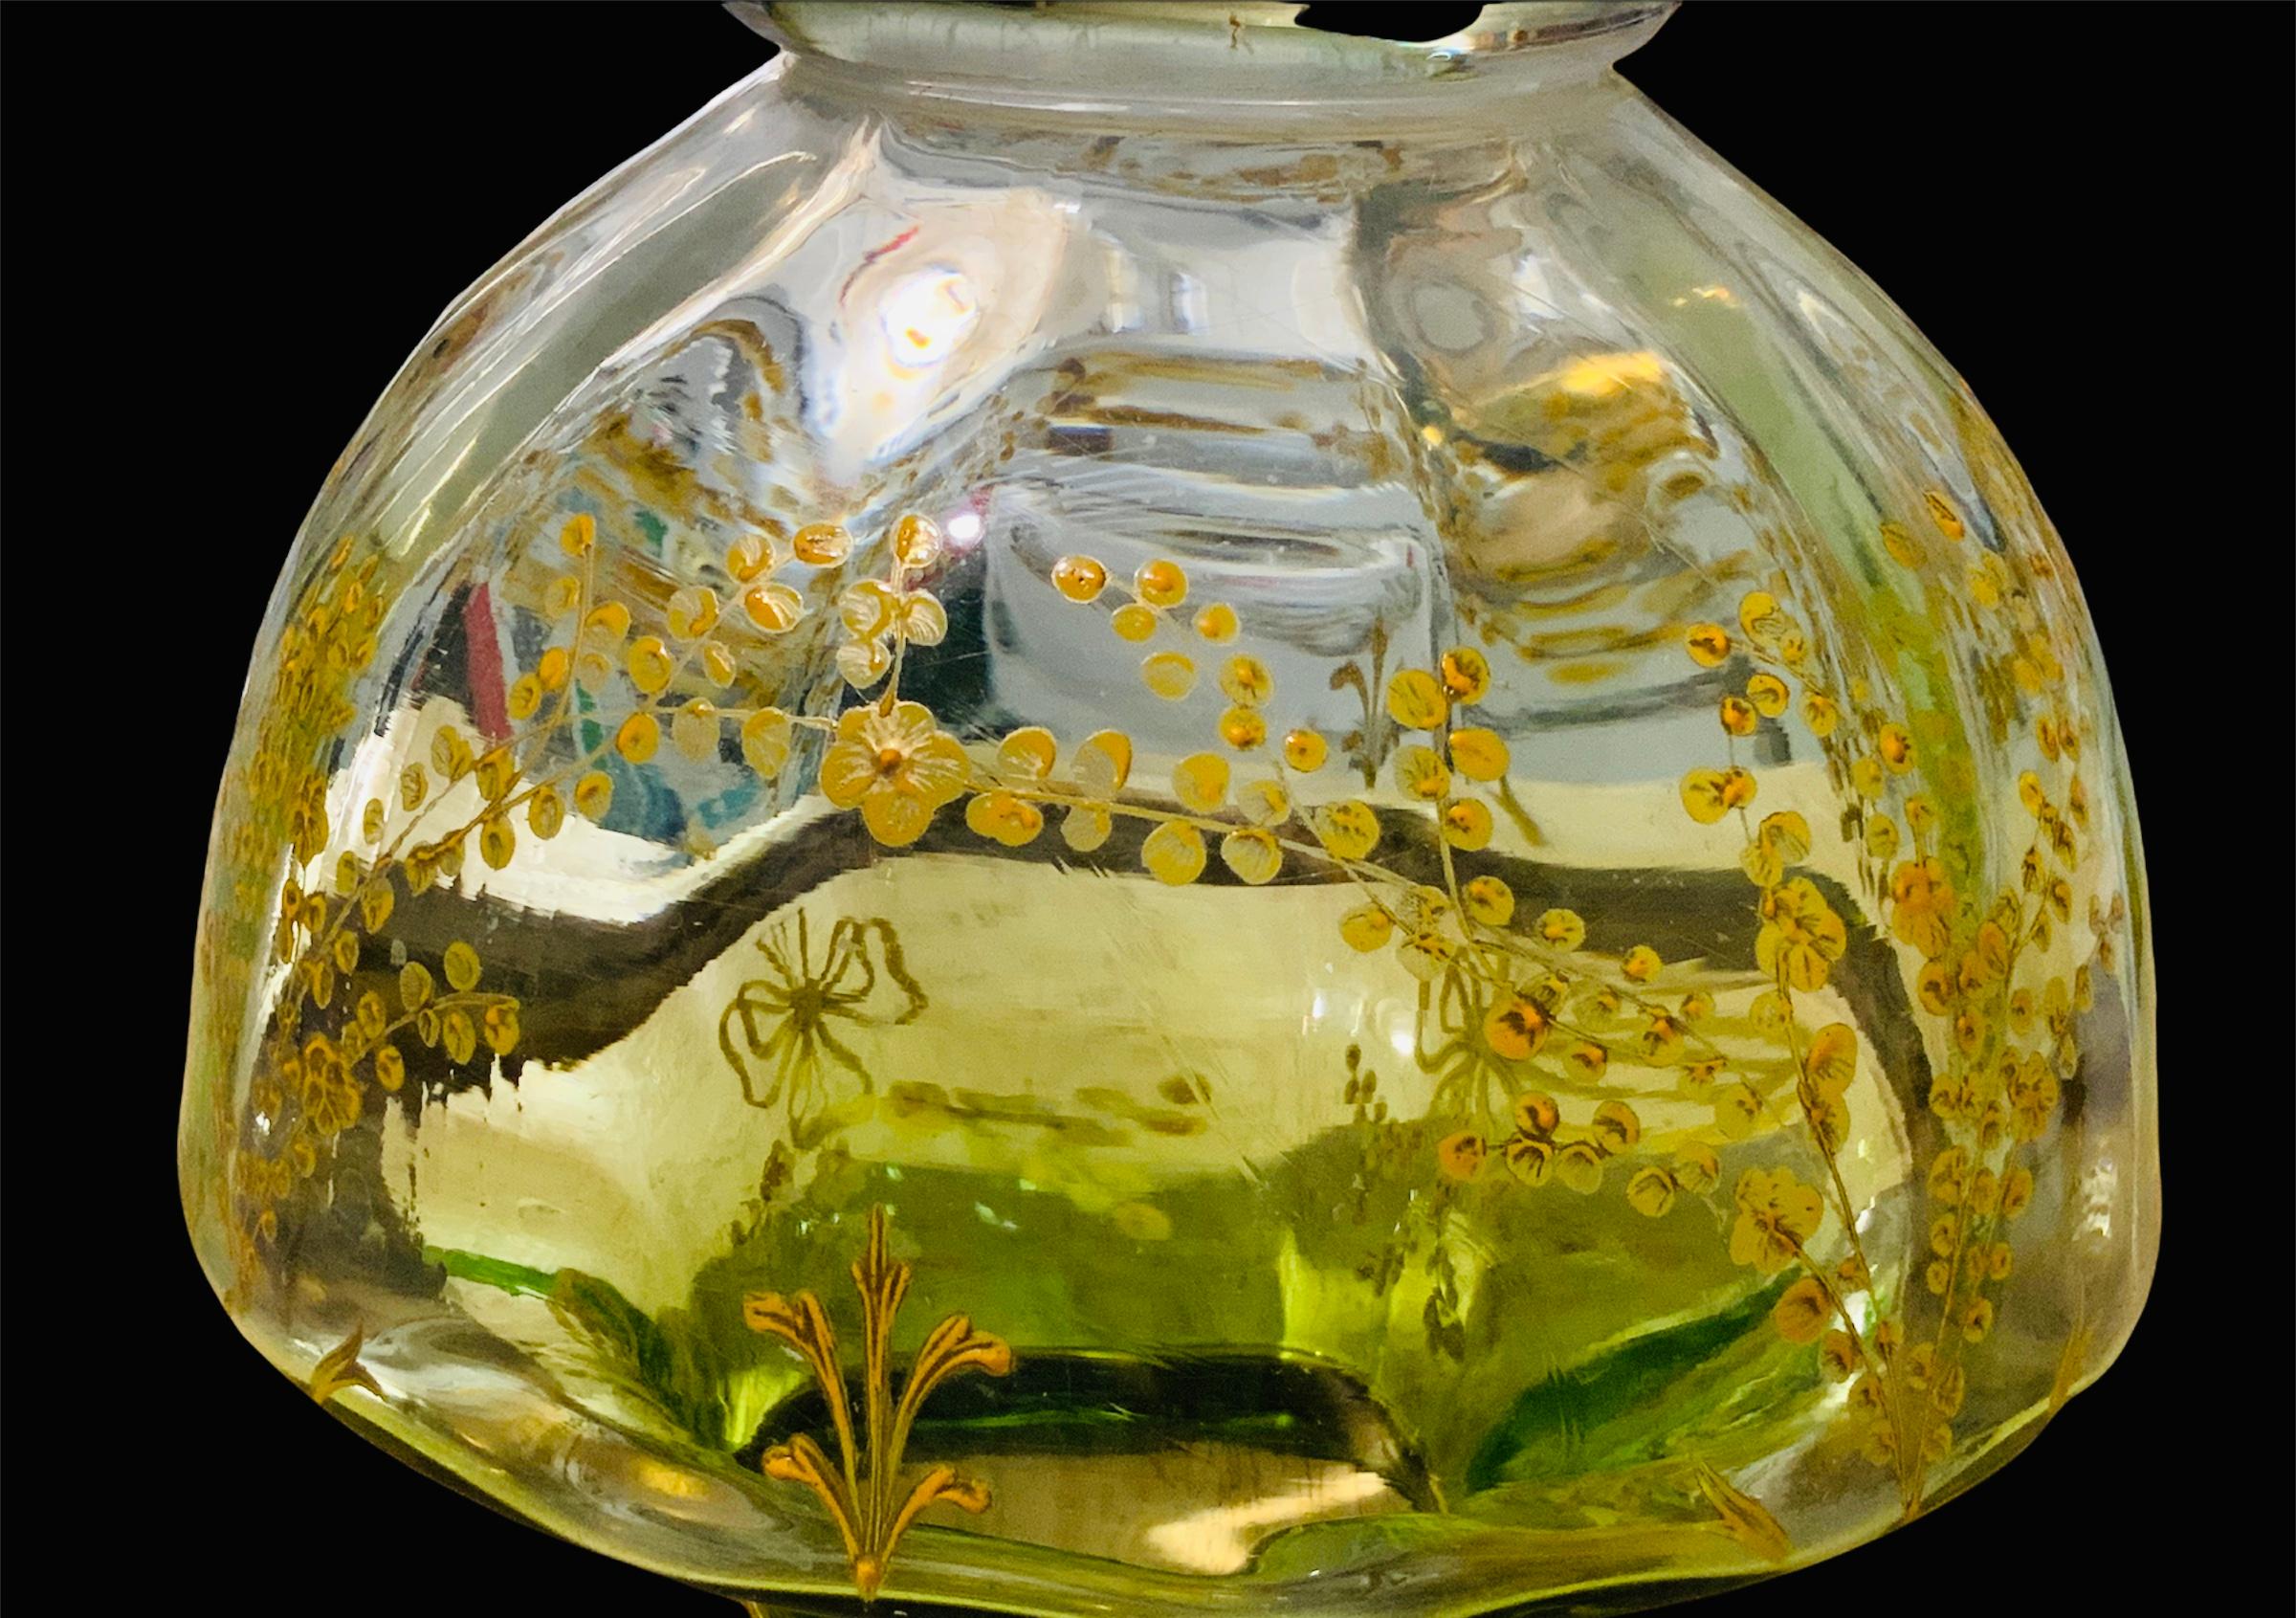 Ce vase en forme d'urne est un centre de table en verre doré et de couleur vert clair de Moser. Il est décoré de branches et de nœuds de fleurs peints à la main en or et en jaune, façon 